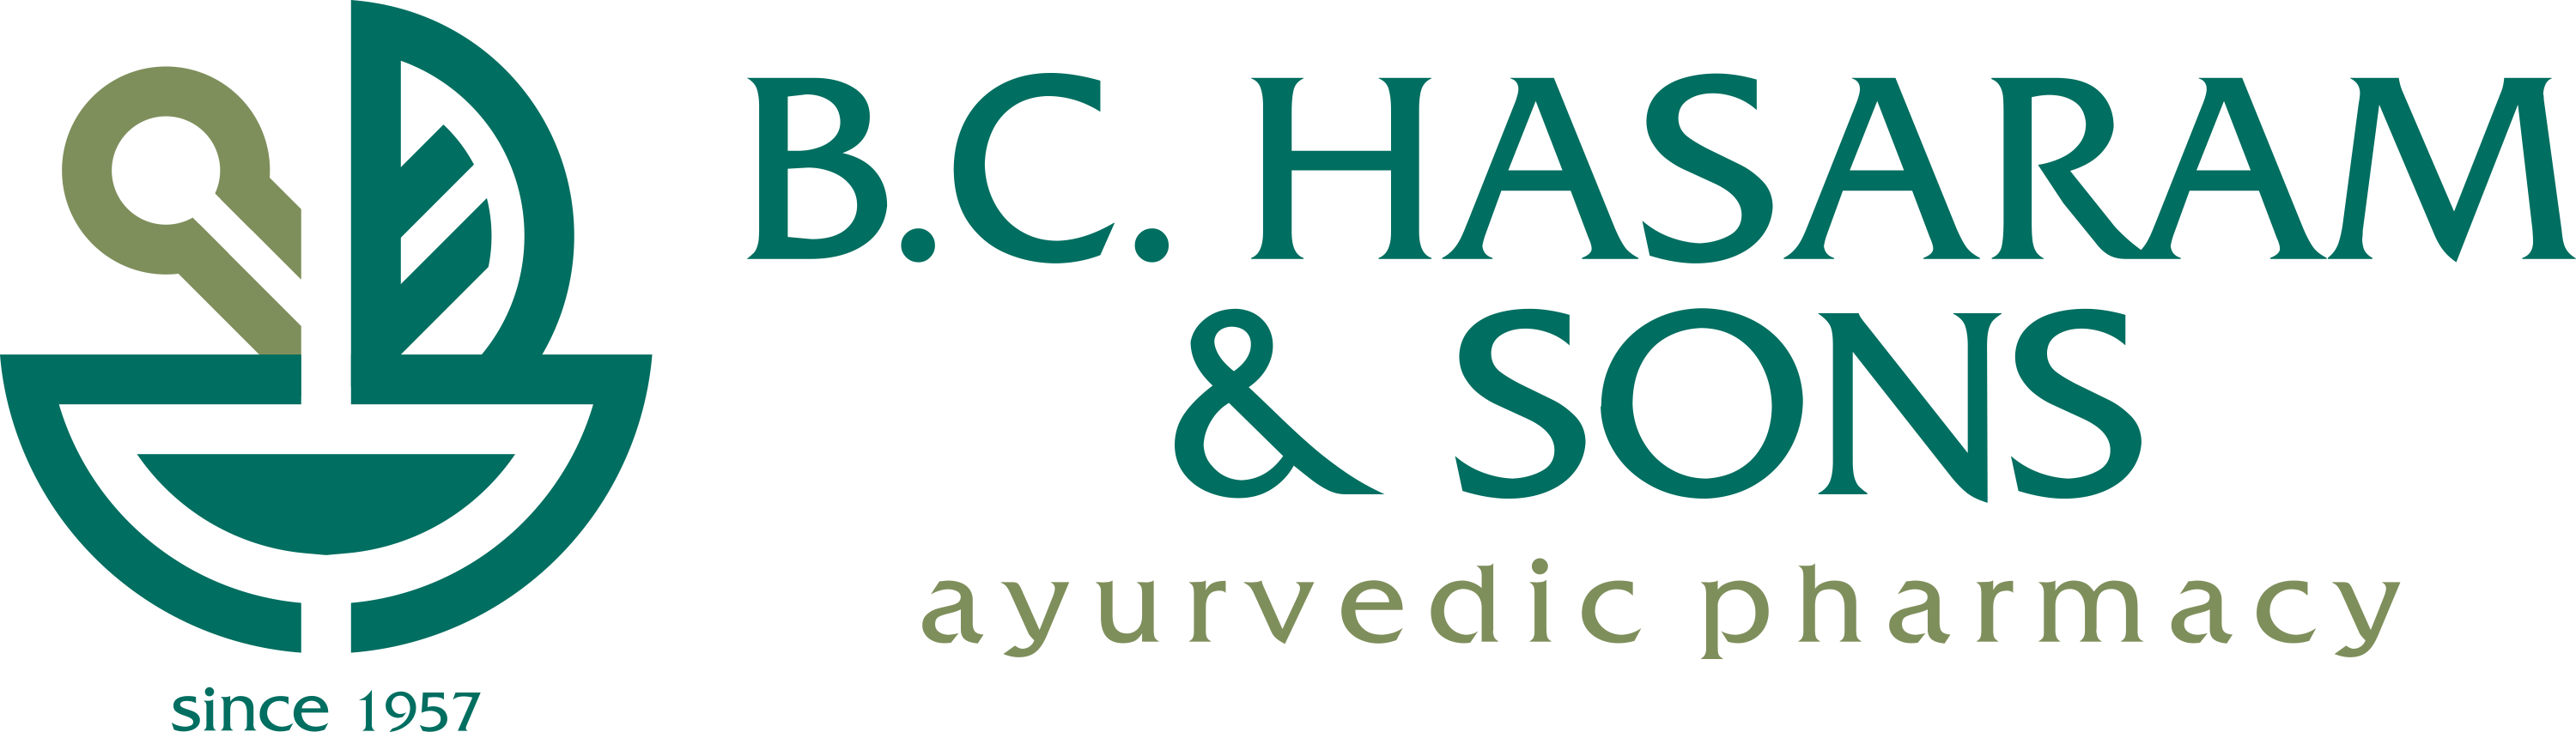 B.C. HASARAM logo